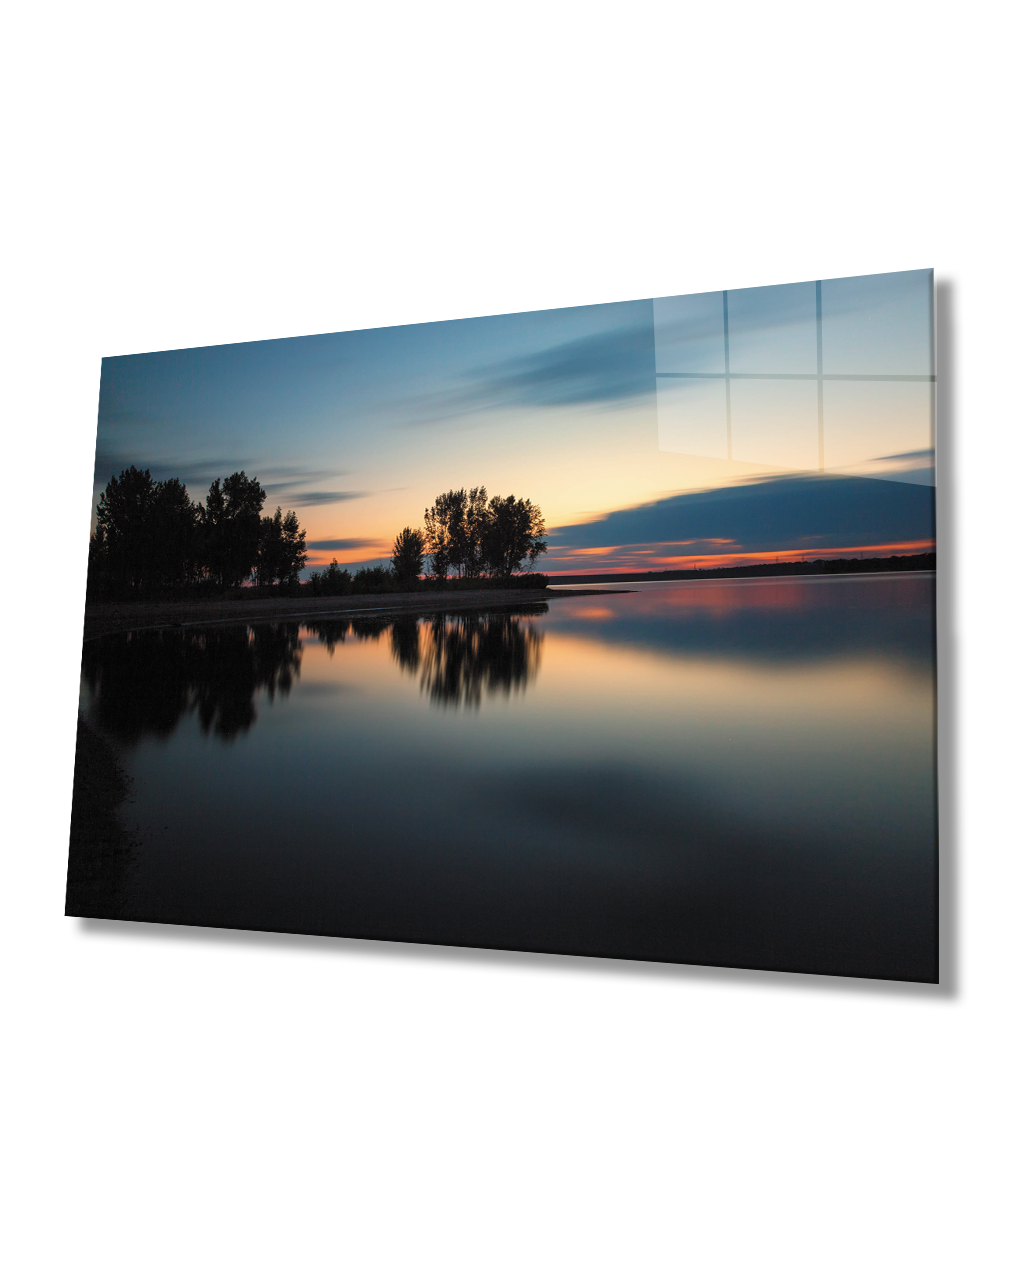 Gün Batımı Ağaç Göl Yansıma Cam Tablo  4mm Dayanıklı Temperli Cam Sunset Tree Lake Reflection Glass Painting 4mm Durable Tempered Glass